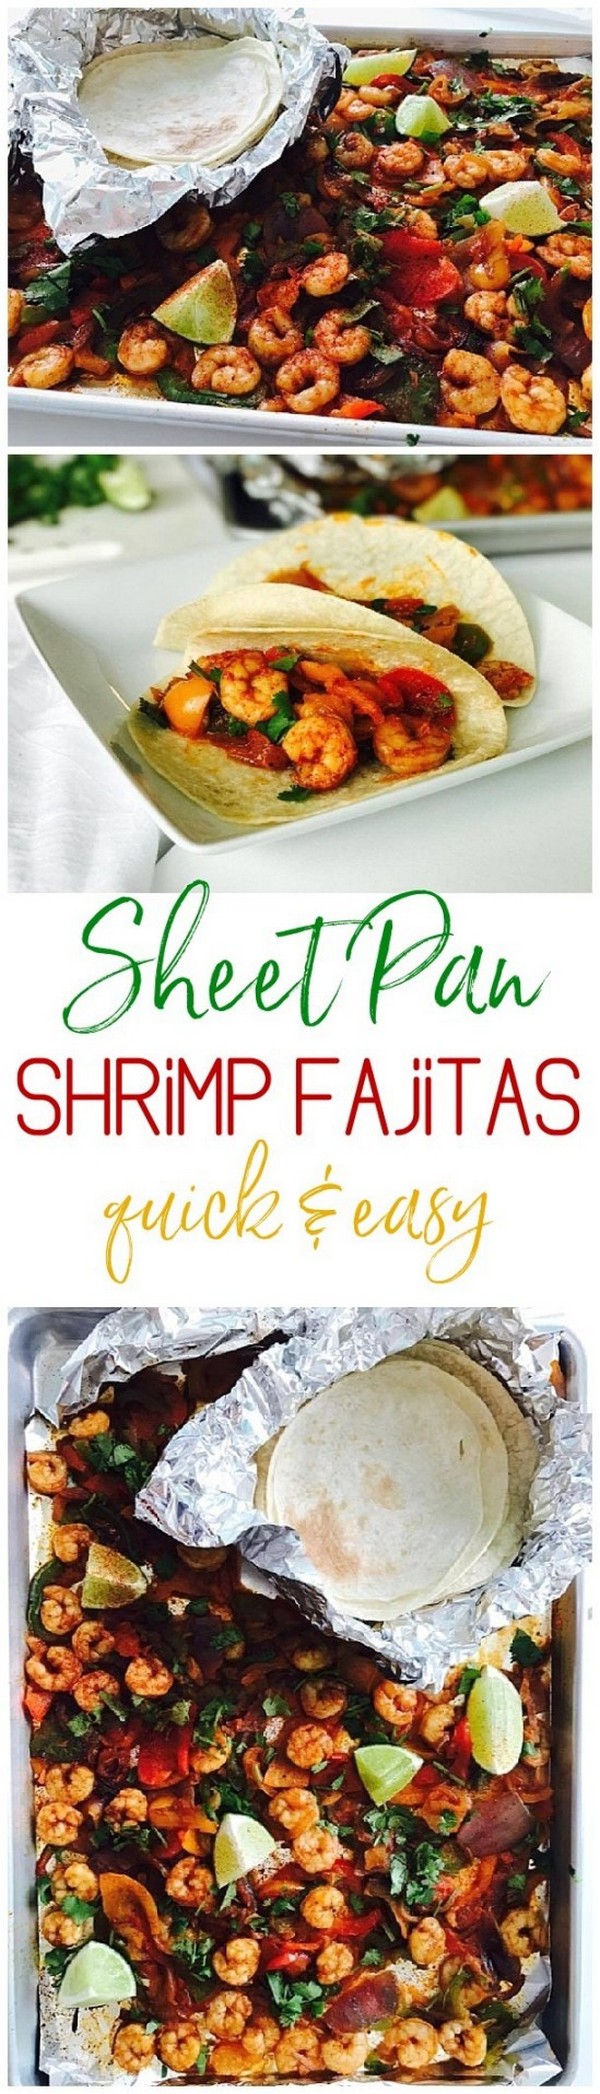 30 Minute Sheet Pan Cajun Shrimp Supper Bowls Or Fajitas Recipe